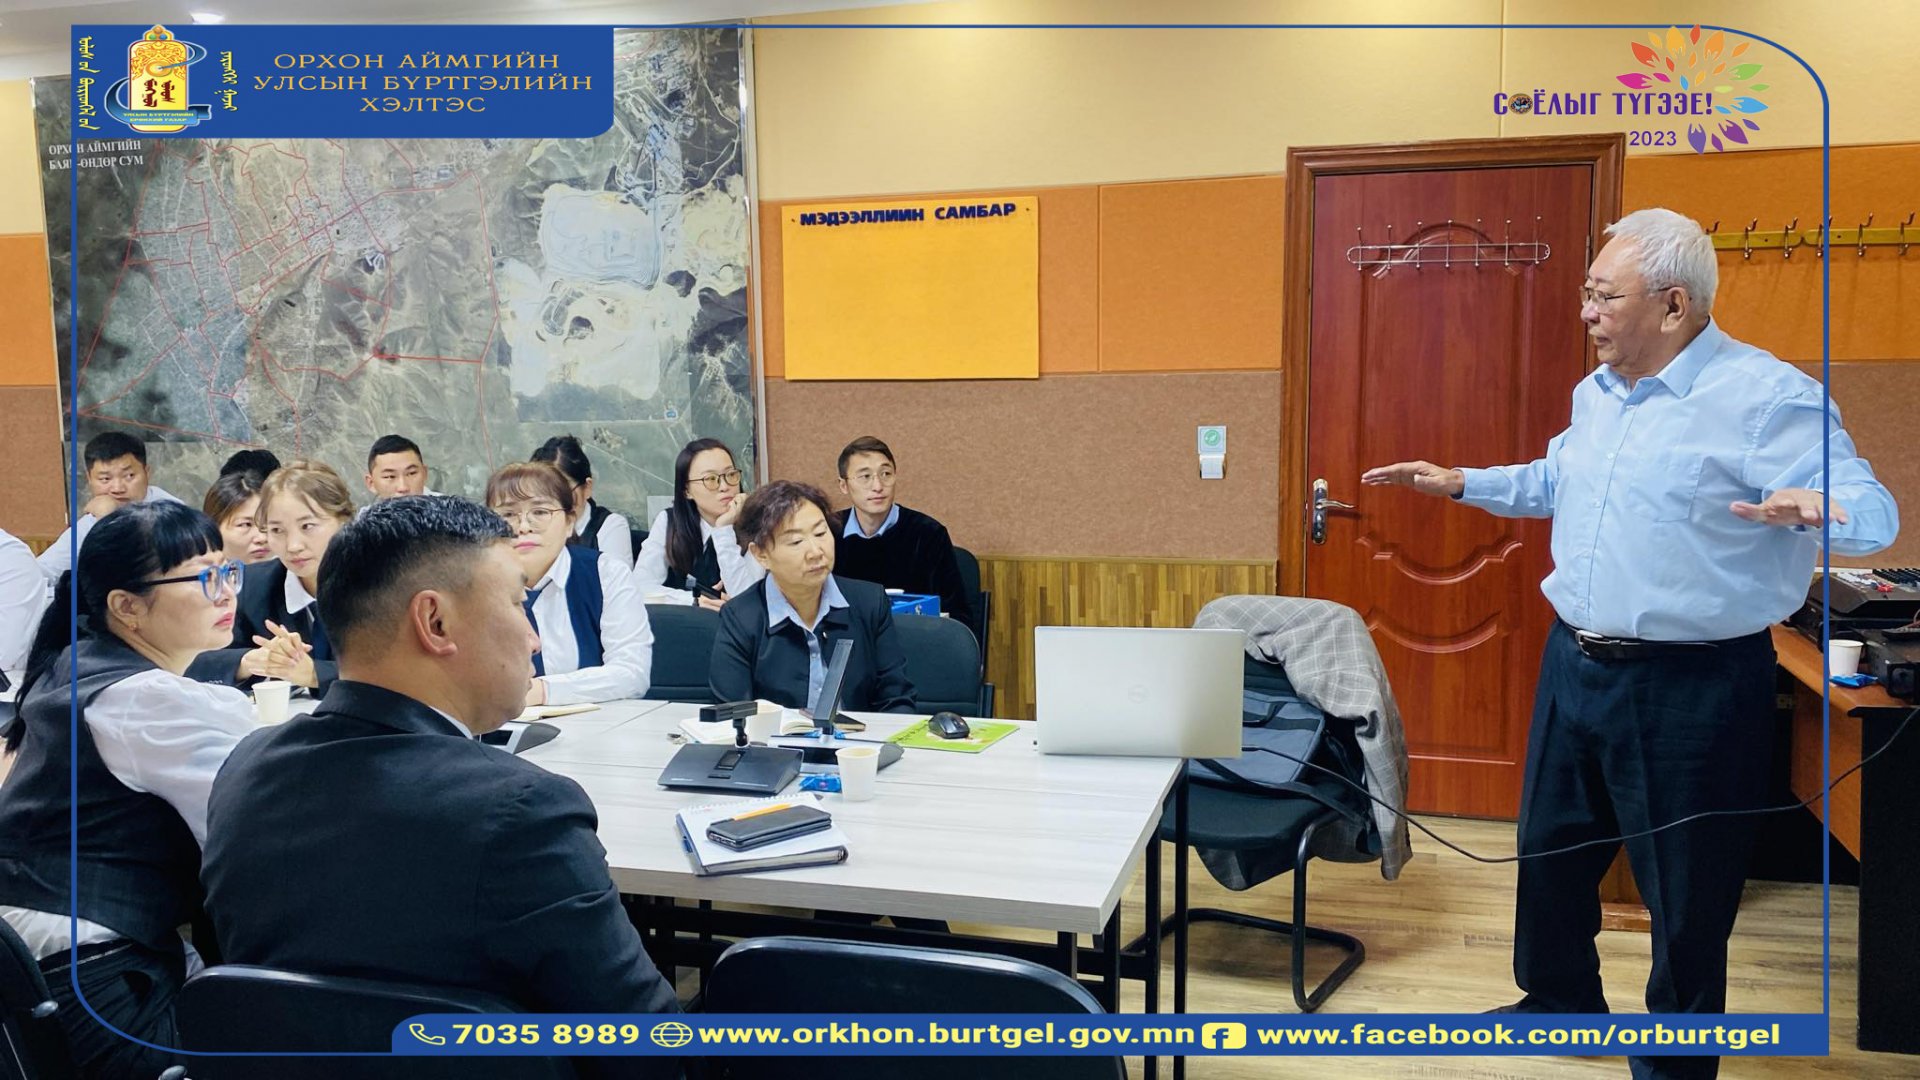 Соёлыг түгээе-2023 аяныг хэлтэст зохион байгуулах комиссын урилгаар Монгол Улсын Гавьяат багш, философич, төрийн удирдлагын доктор, ШУТИС-ийн хүндэт профессор Ш.Ганбат 2023.11.06-ны өдөр 